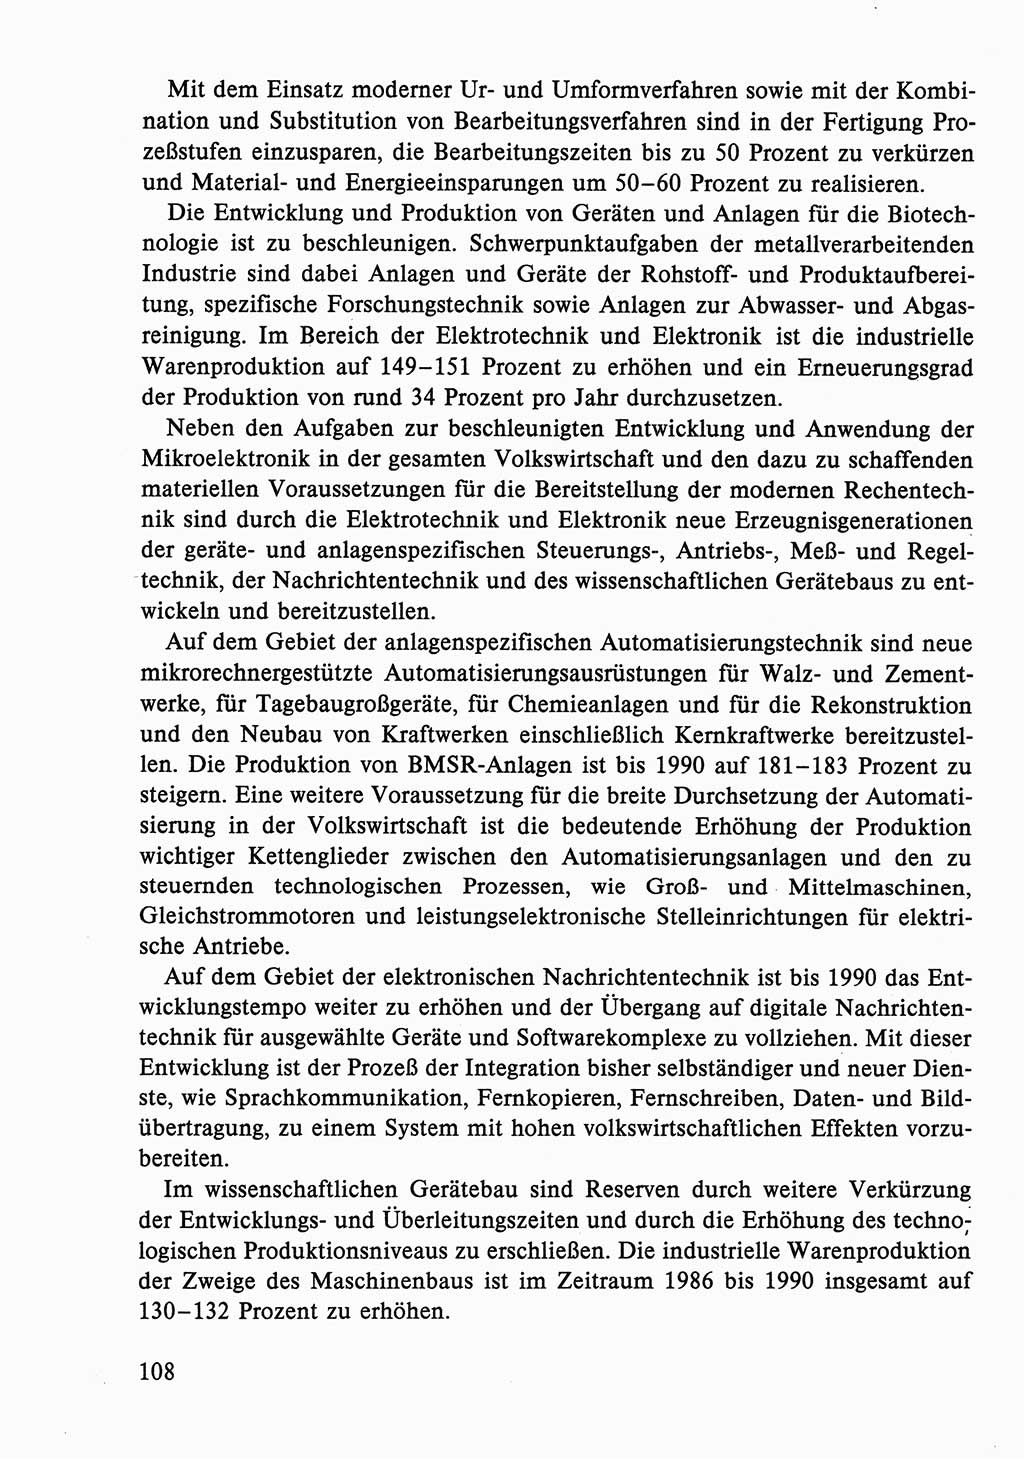 Dokumente der Sozialistischen Einheitspartei Deutschlands (SED) [Deutsche Demokratische Republik (DDR)] 1986-1987, Seite 108 (Dok. SED DDR 1986-1987, S. 108)